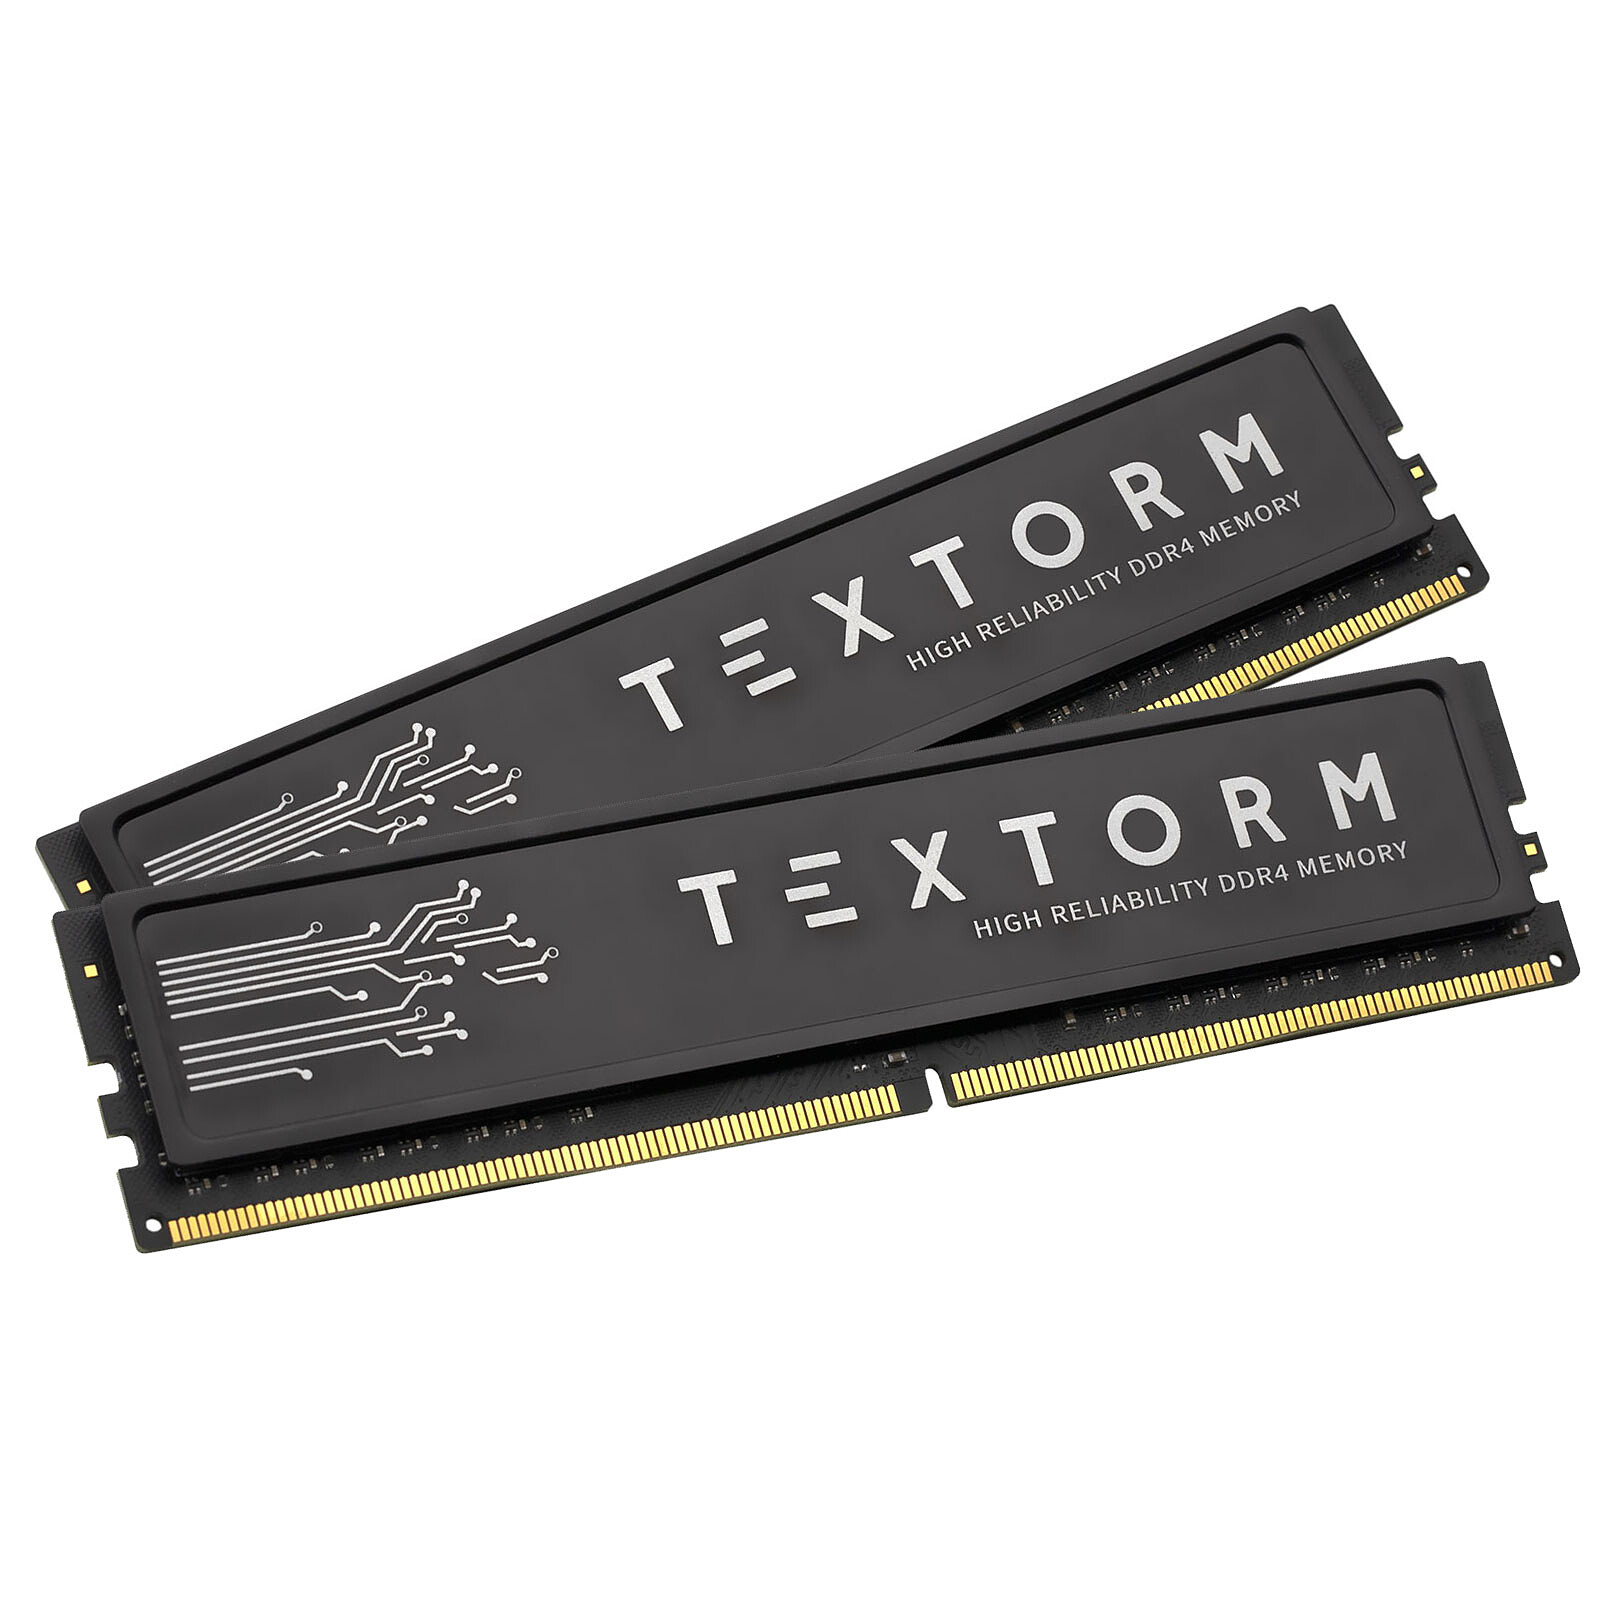 Textorm 16 Go (2x 8 Go) DDR4 3200 MHz CL16 - Mémoire PC - LDLC